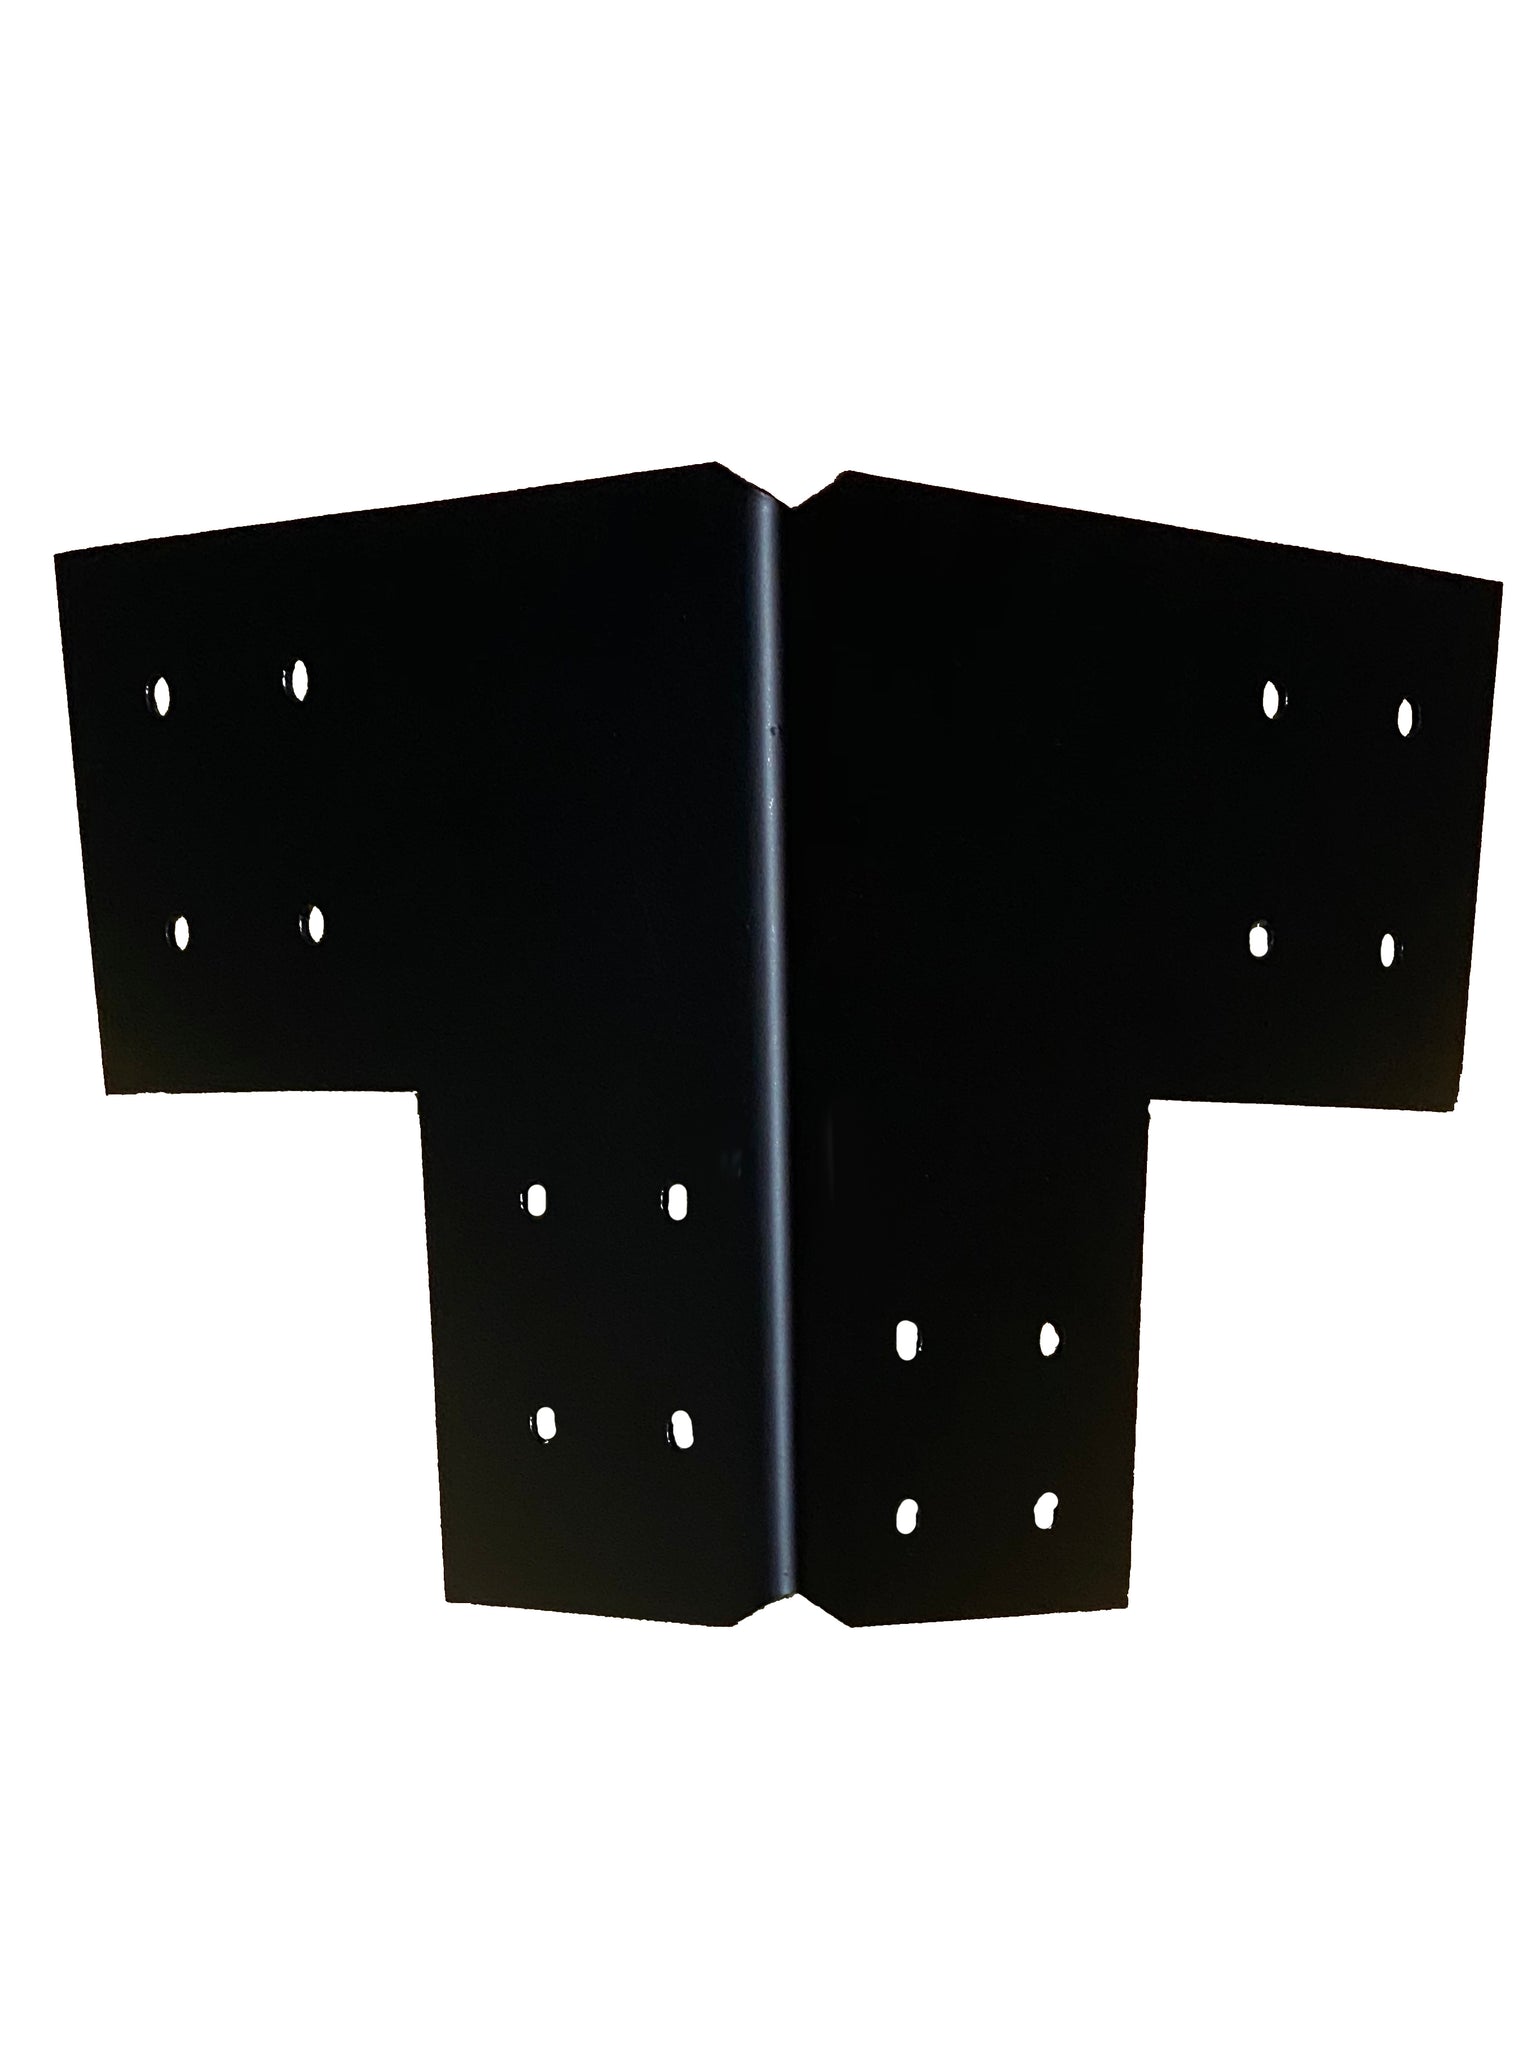 Structural Design Corner Bracket for 8 Post, 8x8 Corner Support Brack –  Texas Metal Makers